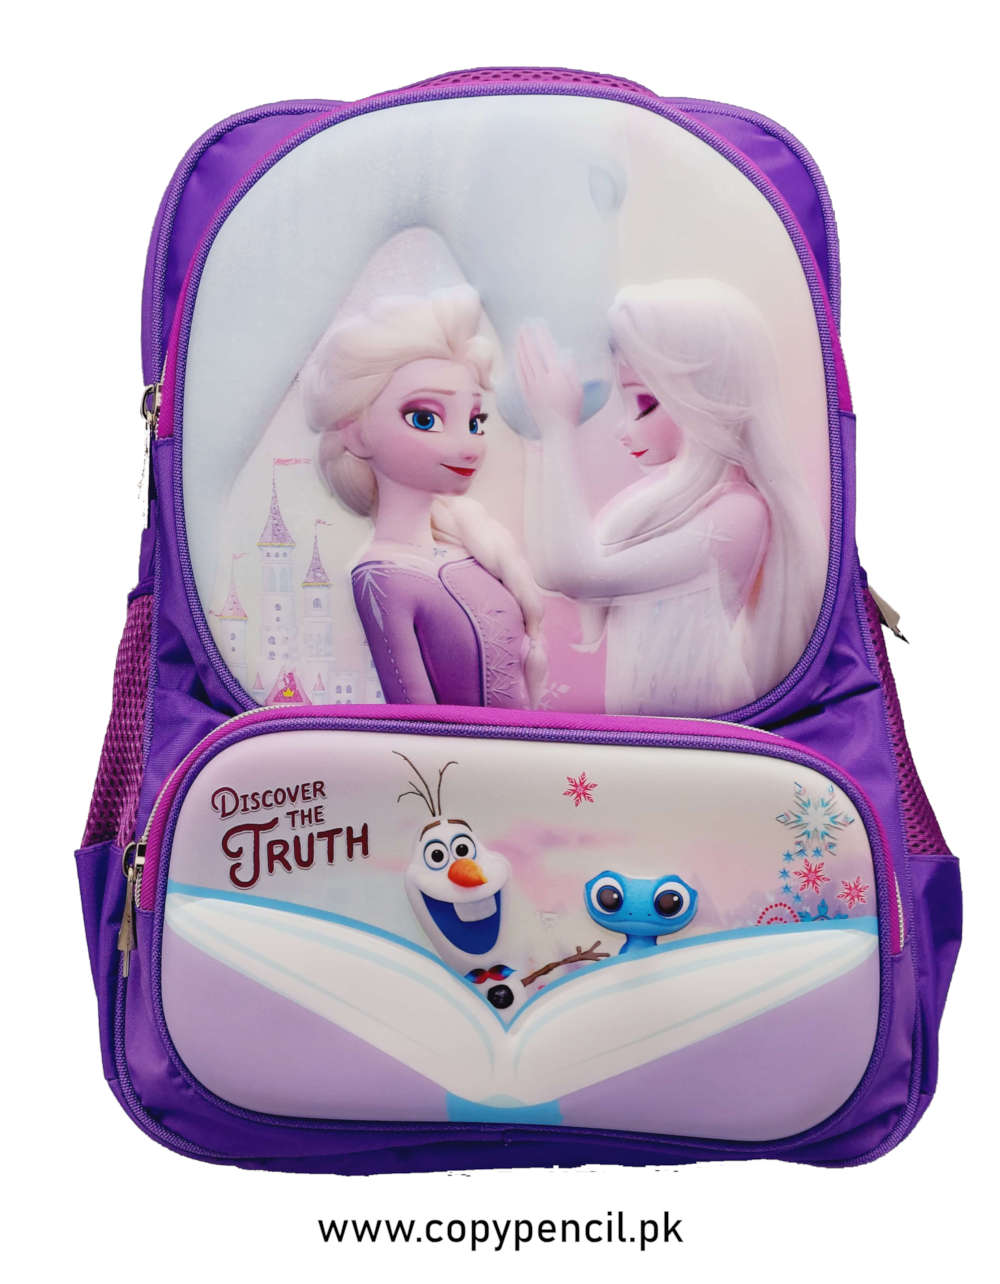 Frozen Themed Backpack For Kids Disney Bag For Girls